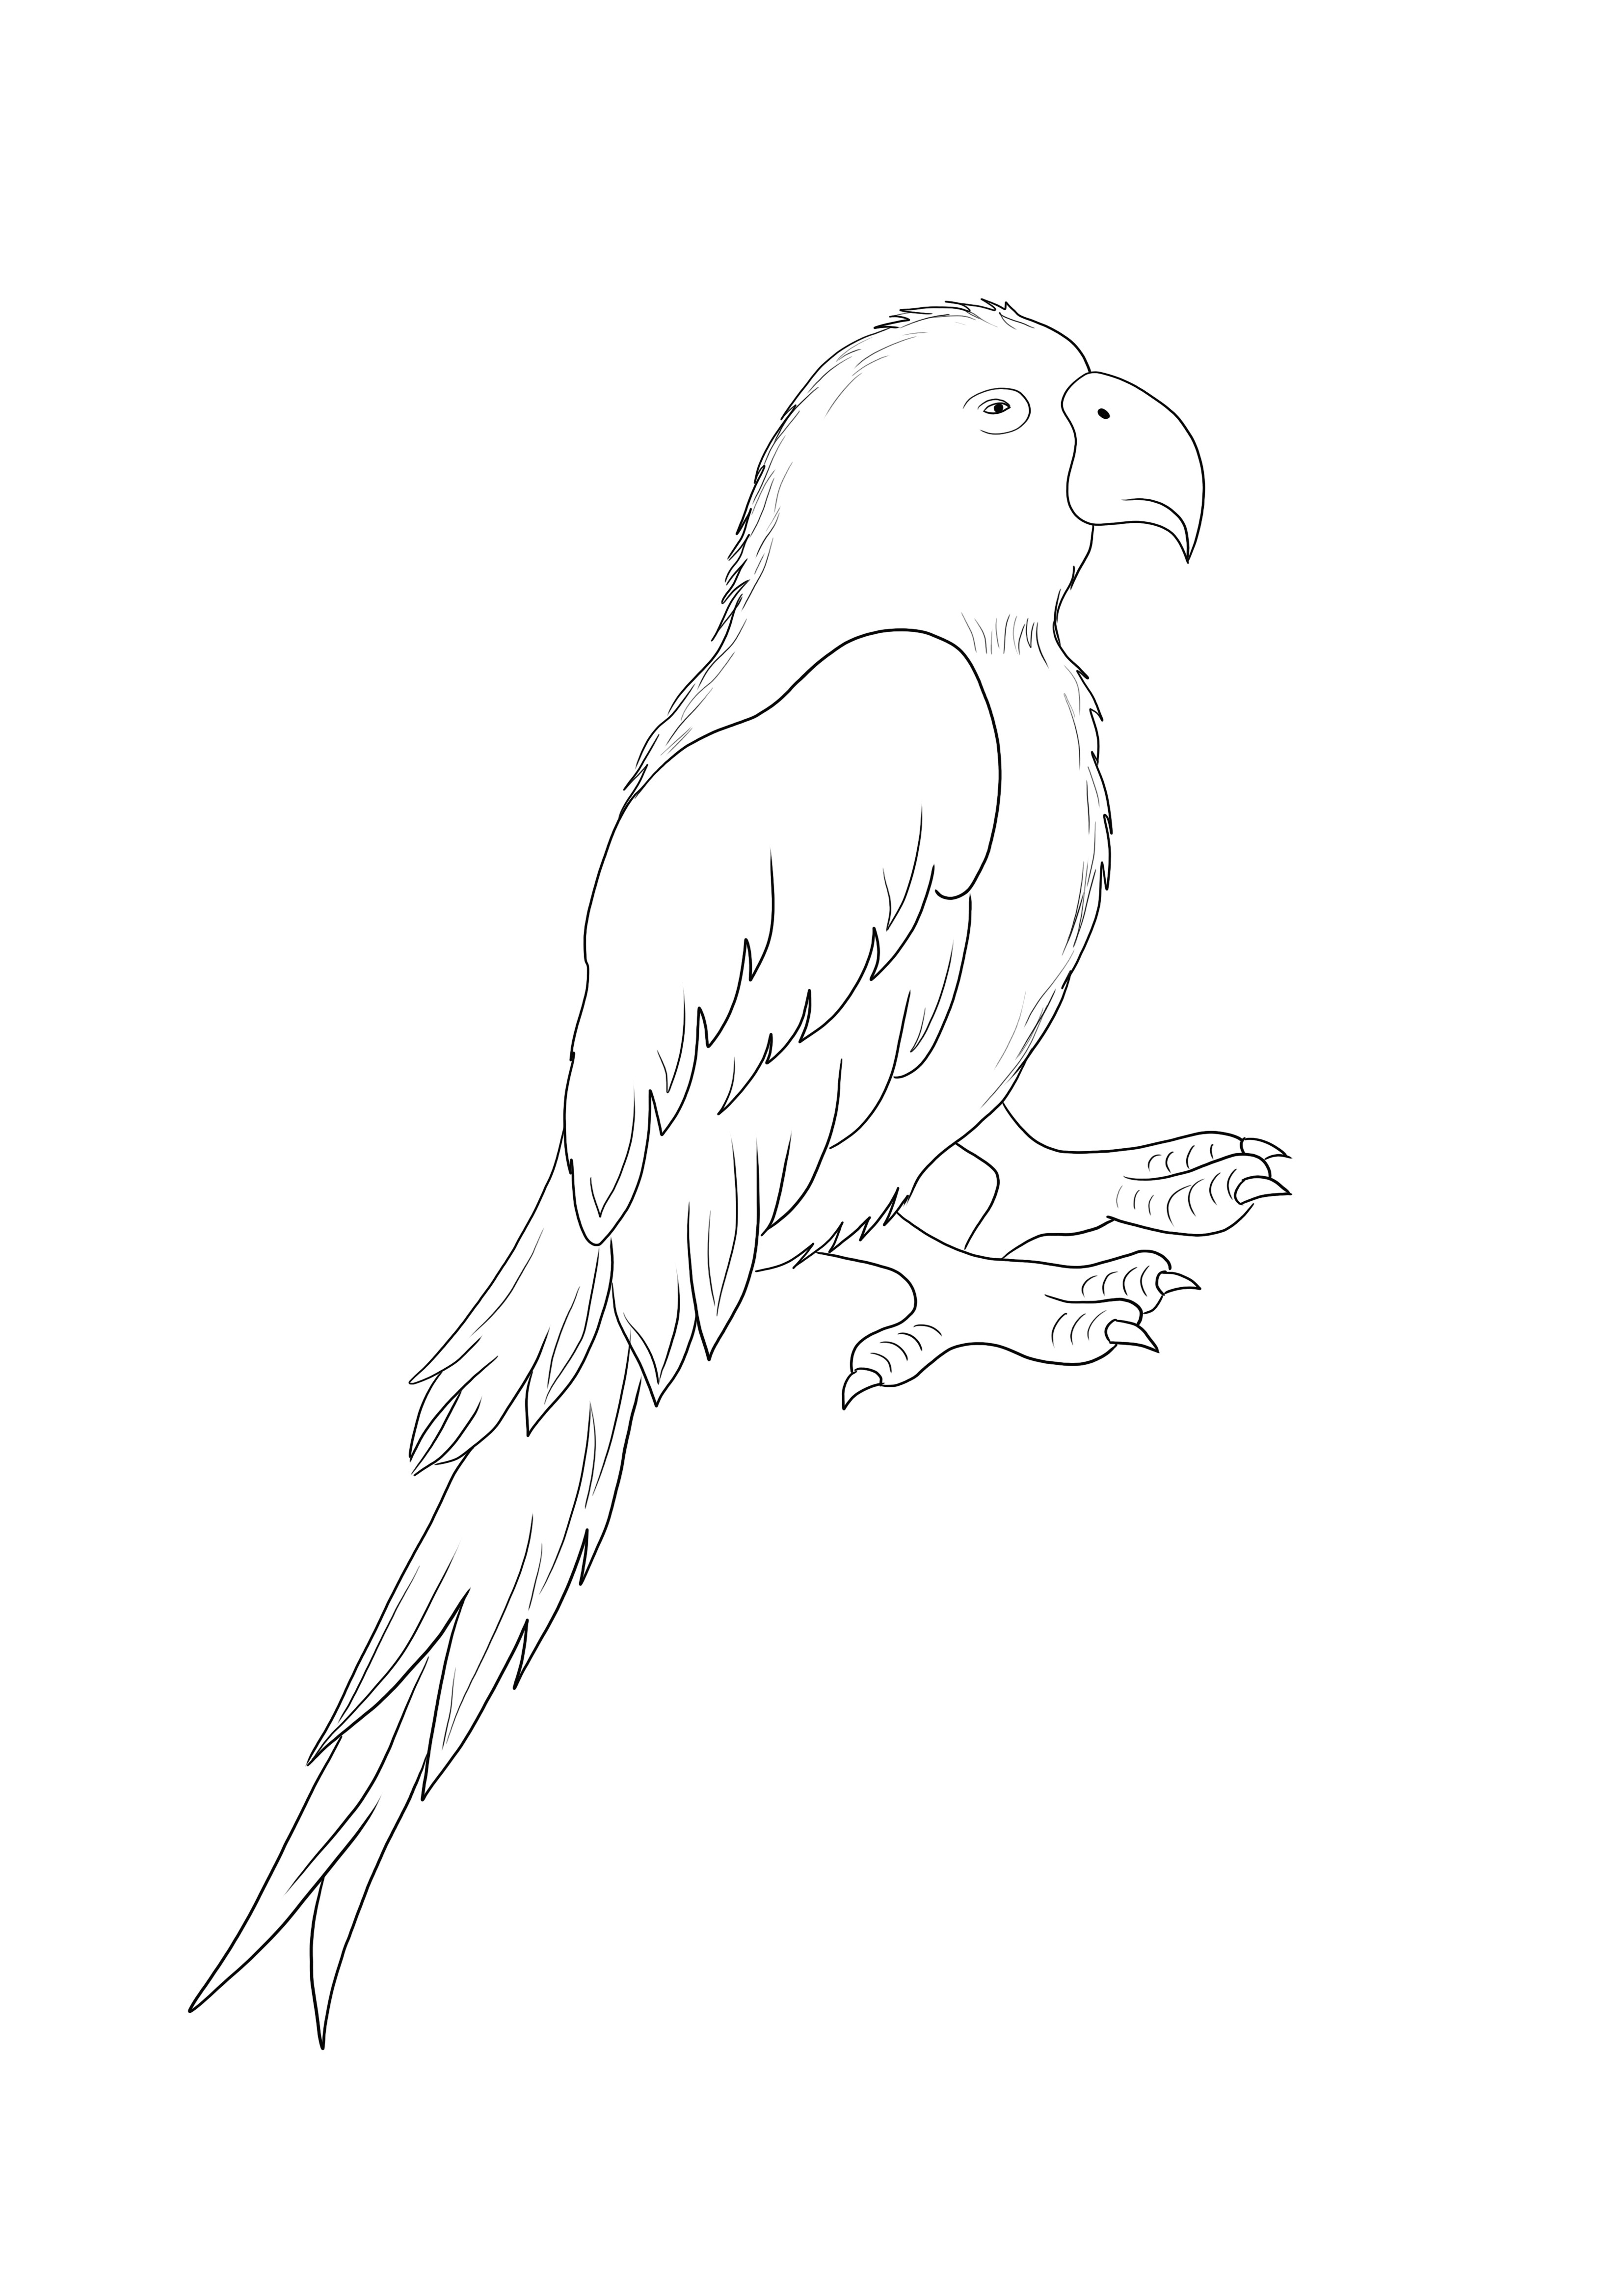 Parrot Bird grátis para imprimir e colorir de forma simples para crianças de todas as idades